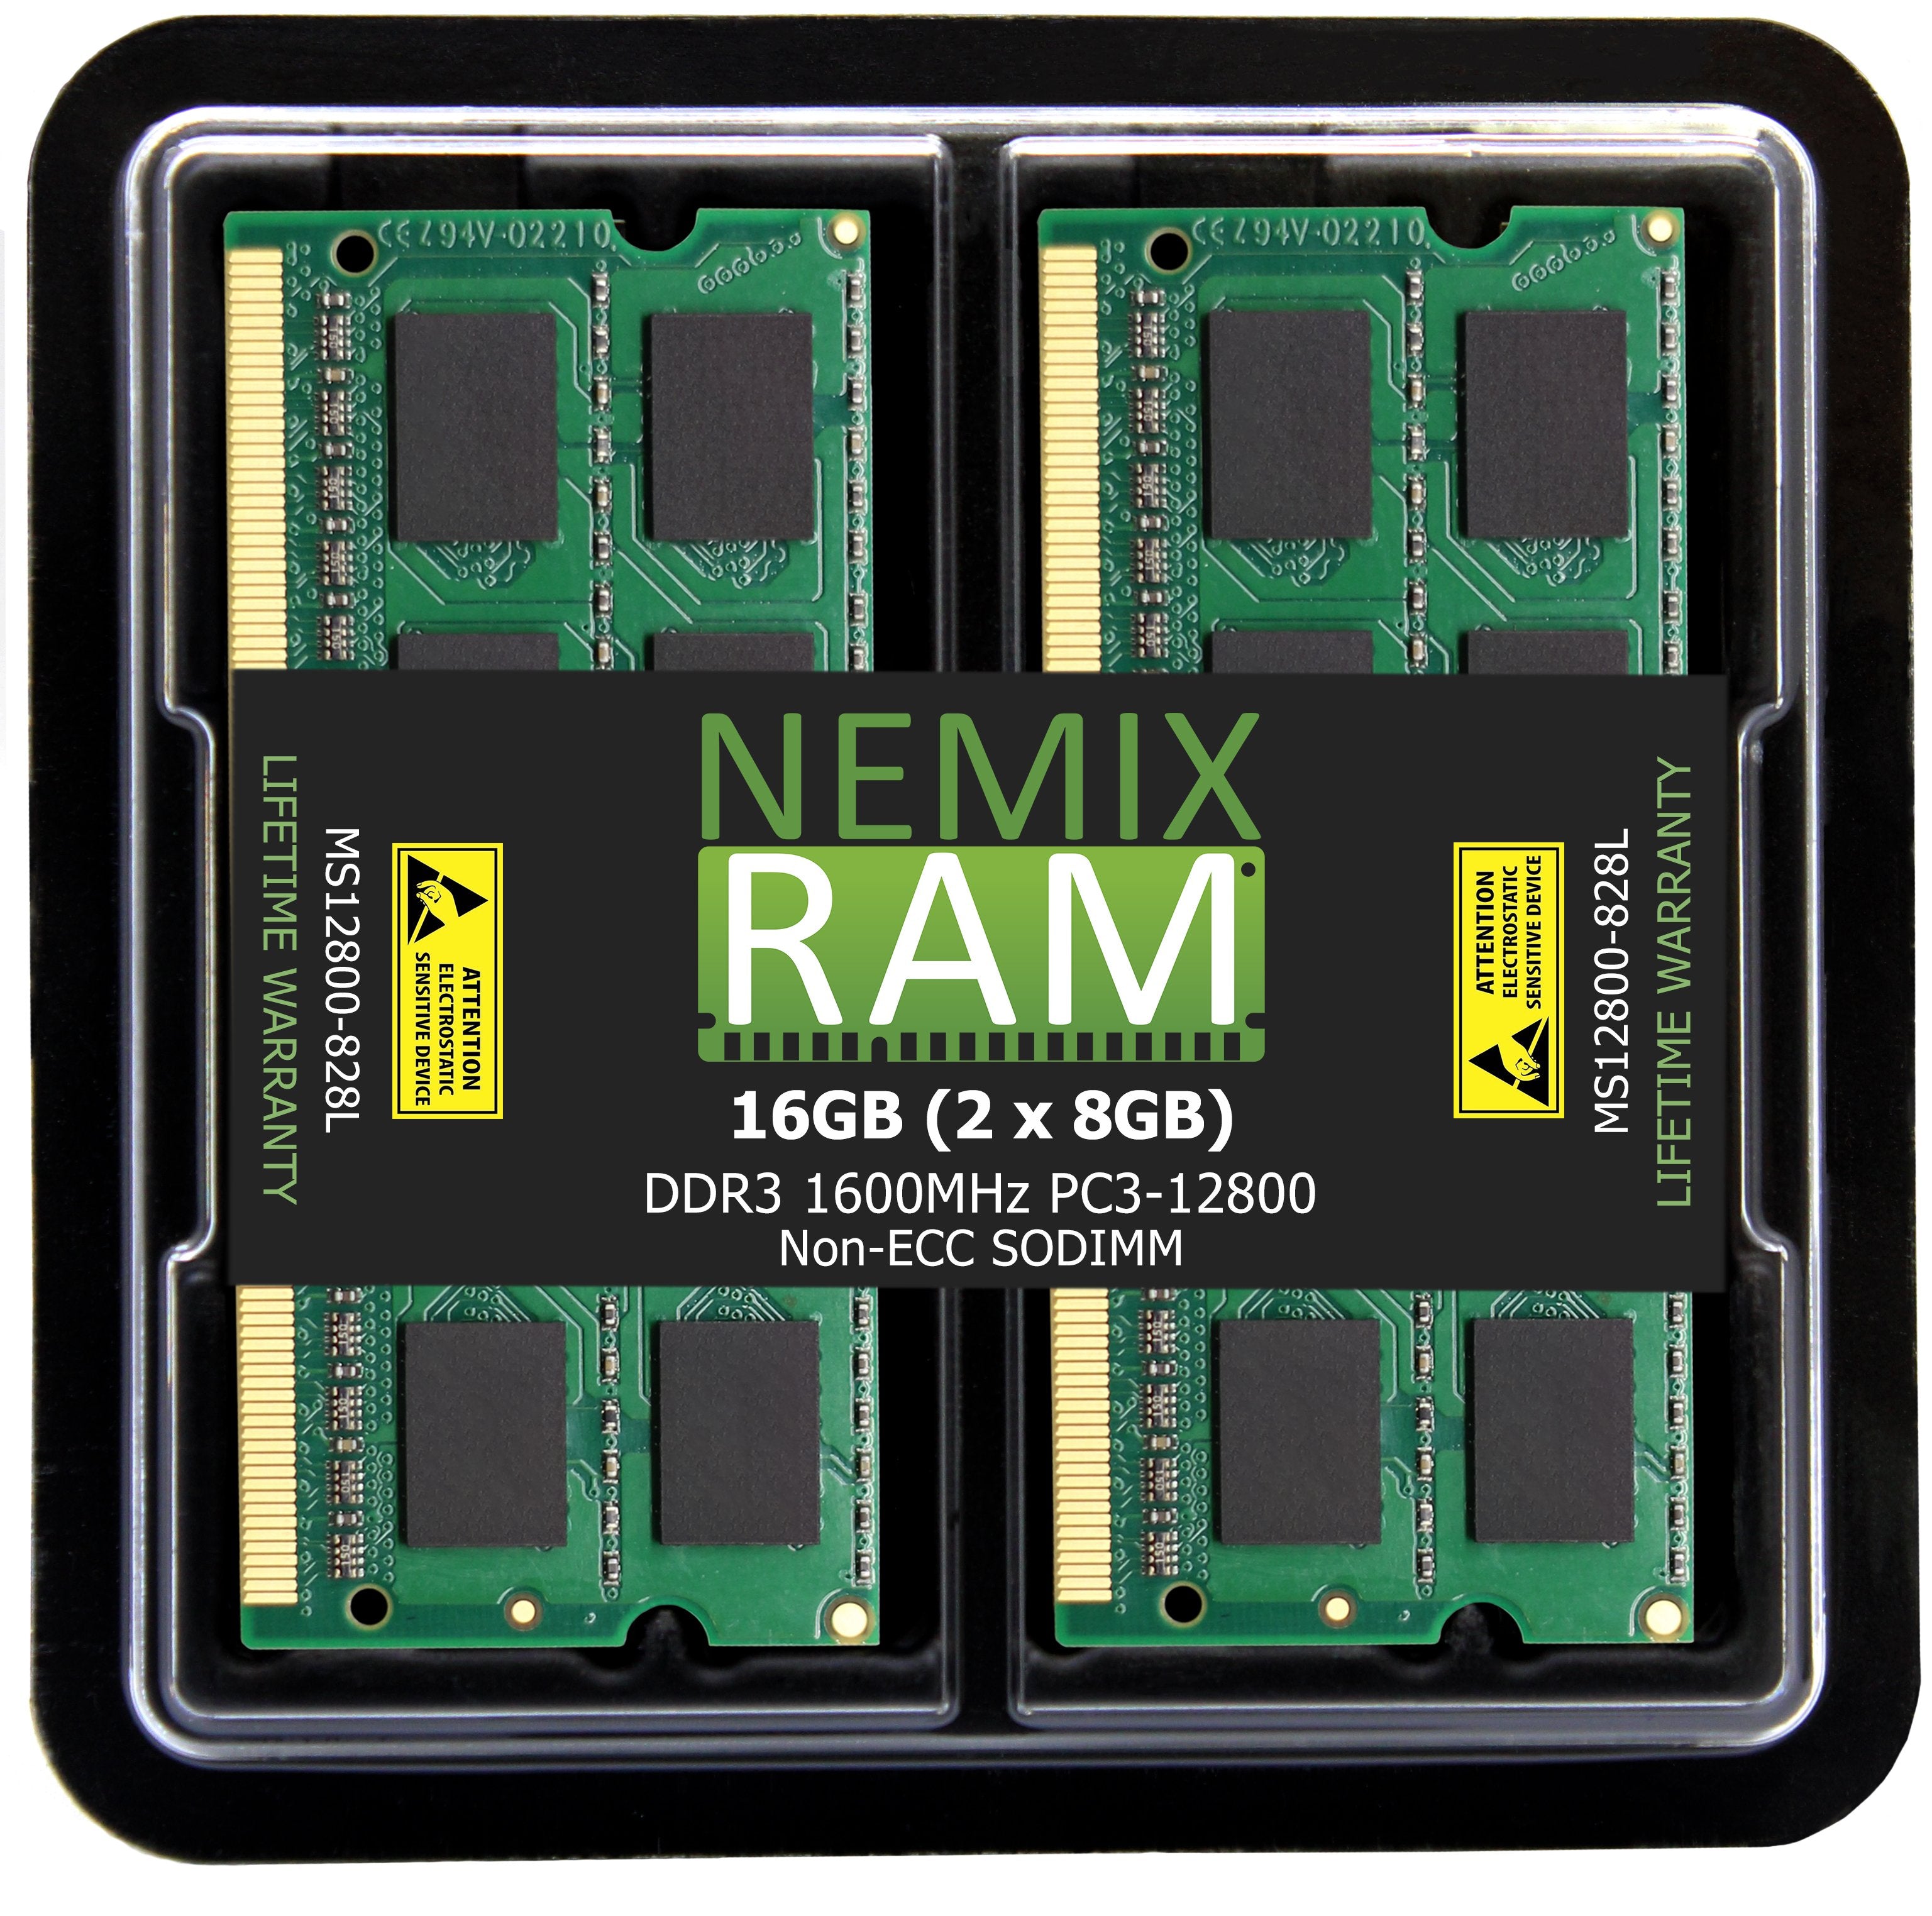 DDR3 1600MHZ PC3-12800 SODIMM for Apple iMac 27" 2012-2013 iMac13,2